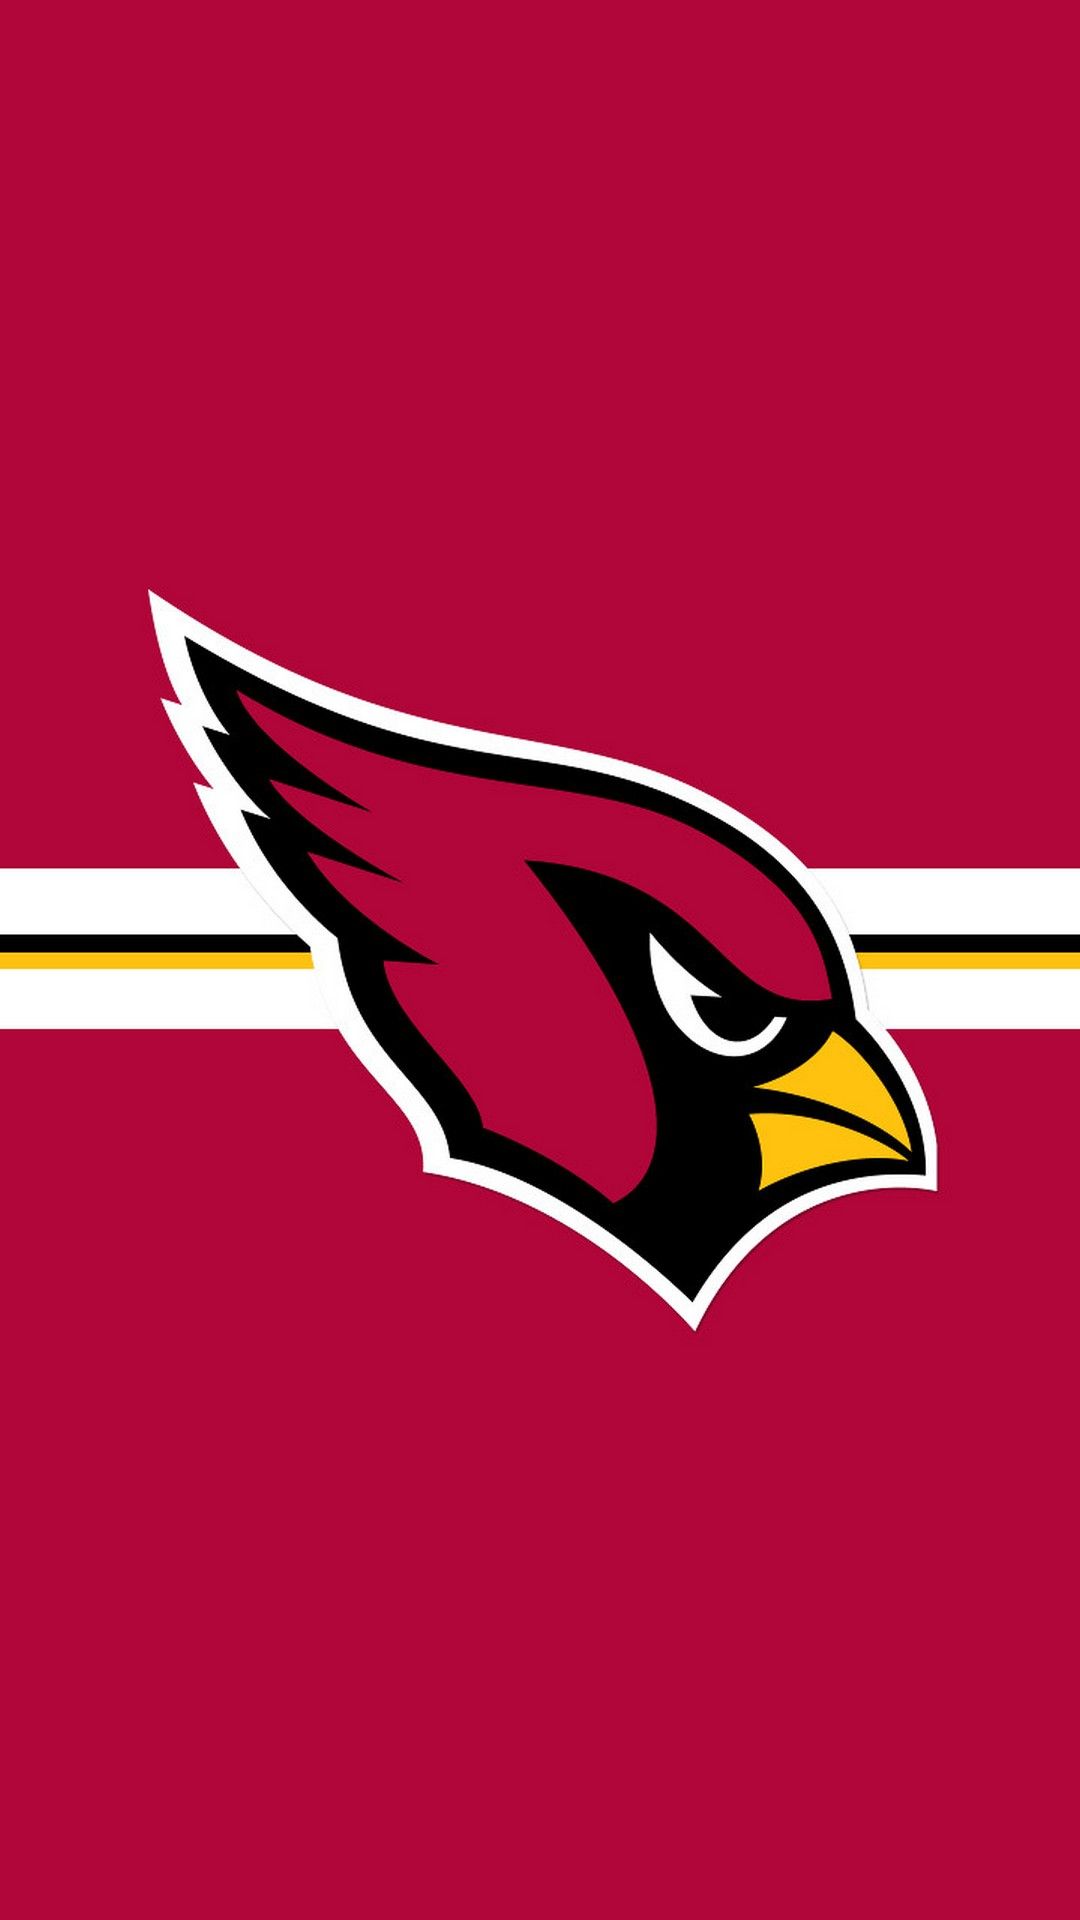 Arizona Cardinals Logo Wallpapers - Top 26 Best Arizona Cardinals